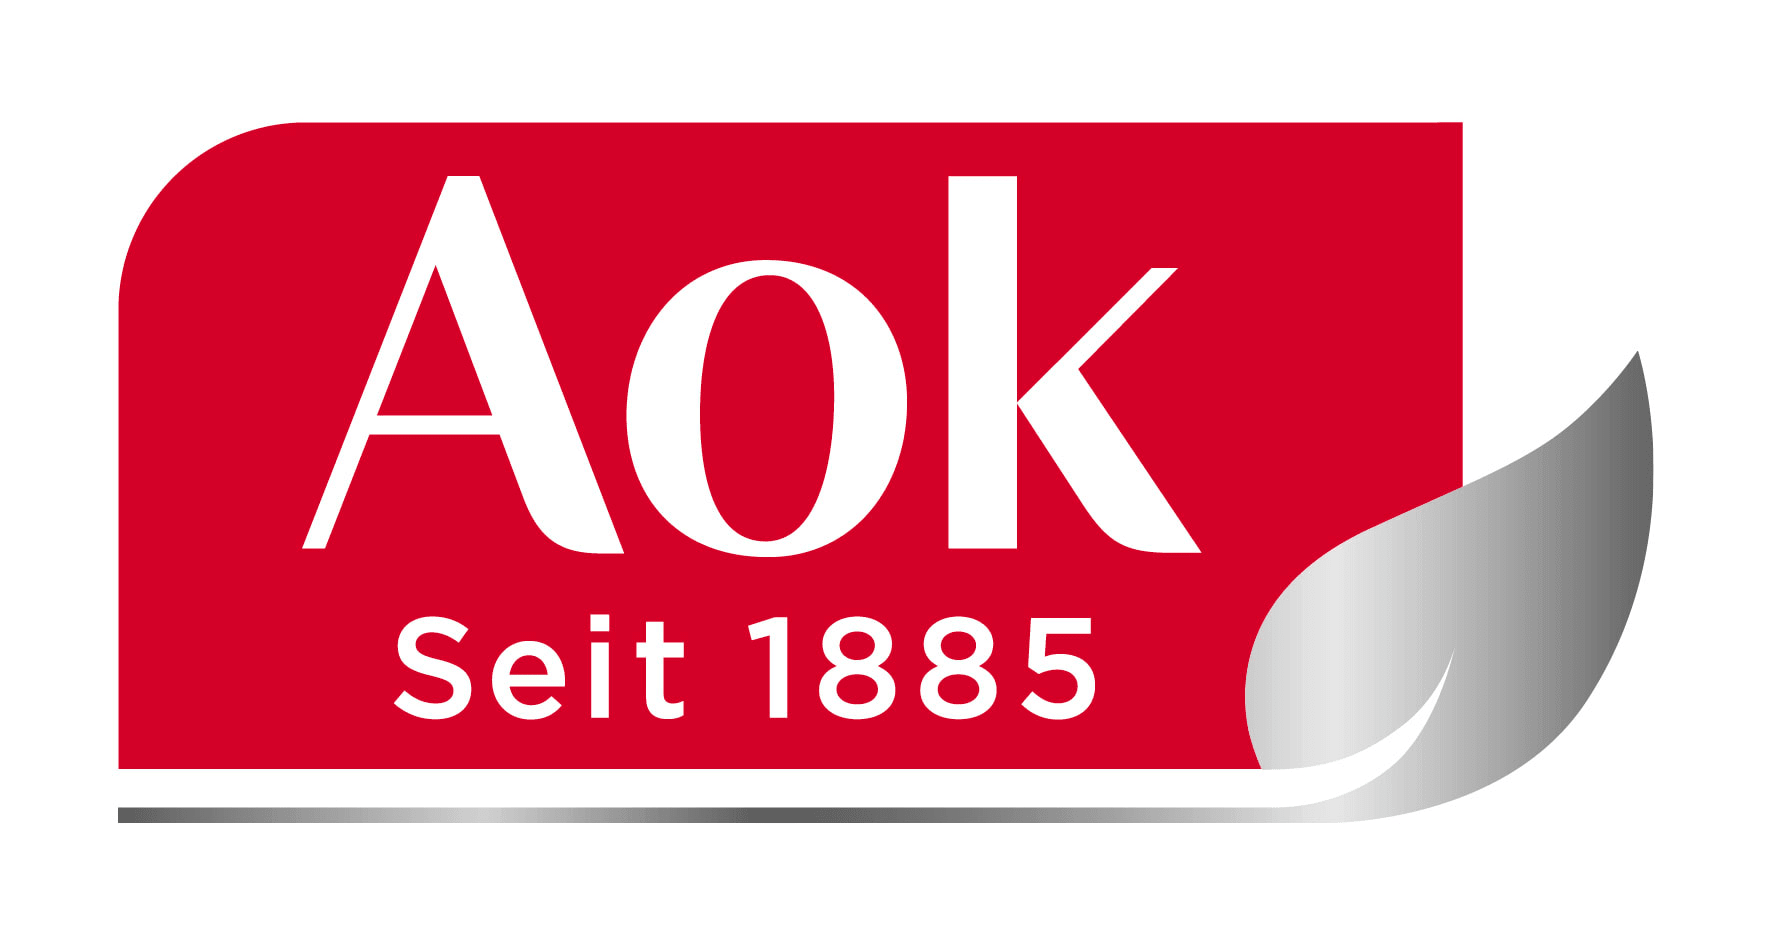 AoK